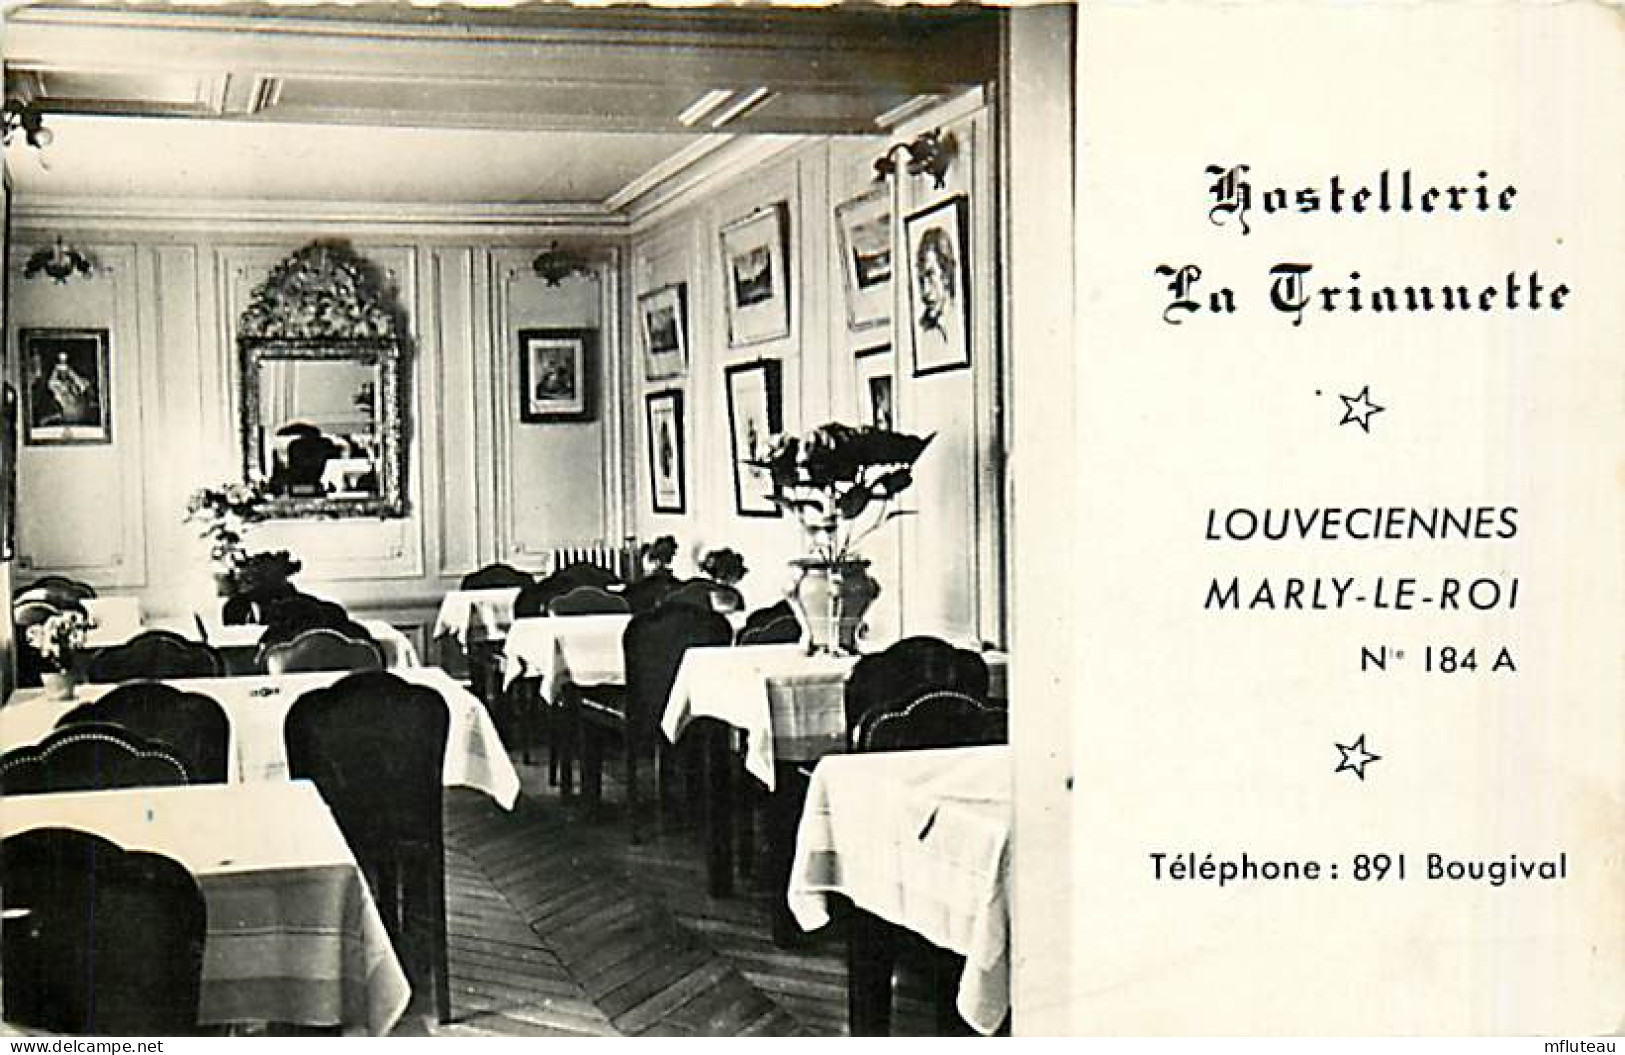 78* LOUVECIENNS Hostellerie La Triannette (CPSM 9x14) MA104,0528 - Louveciennes